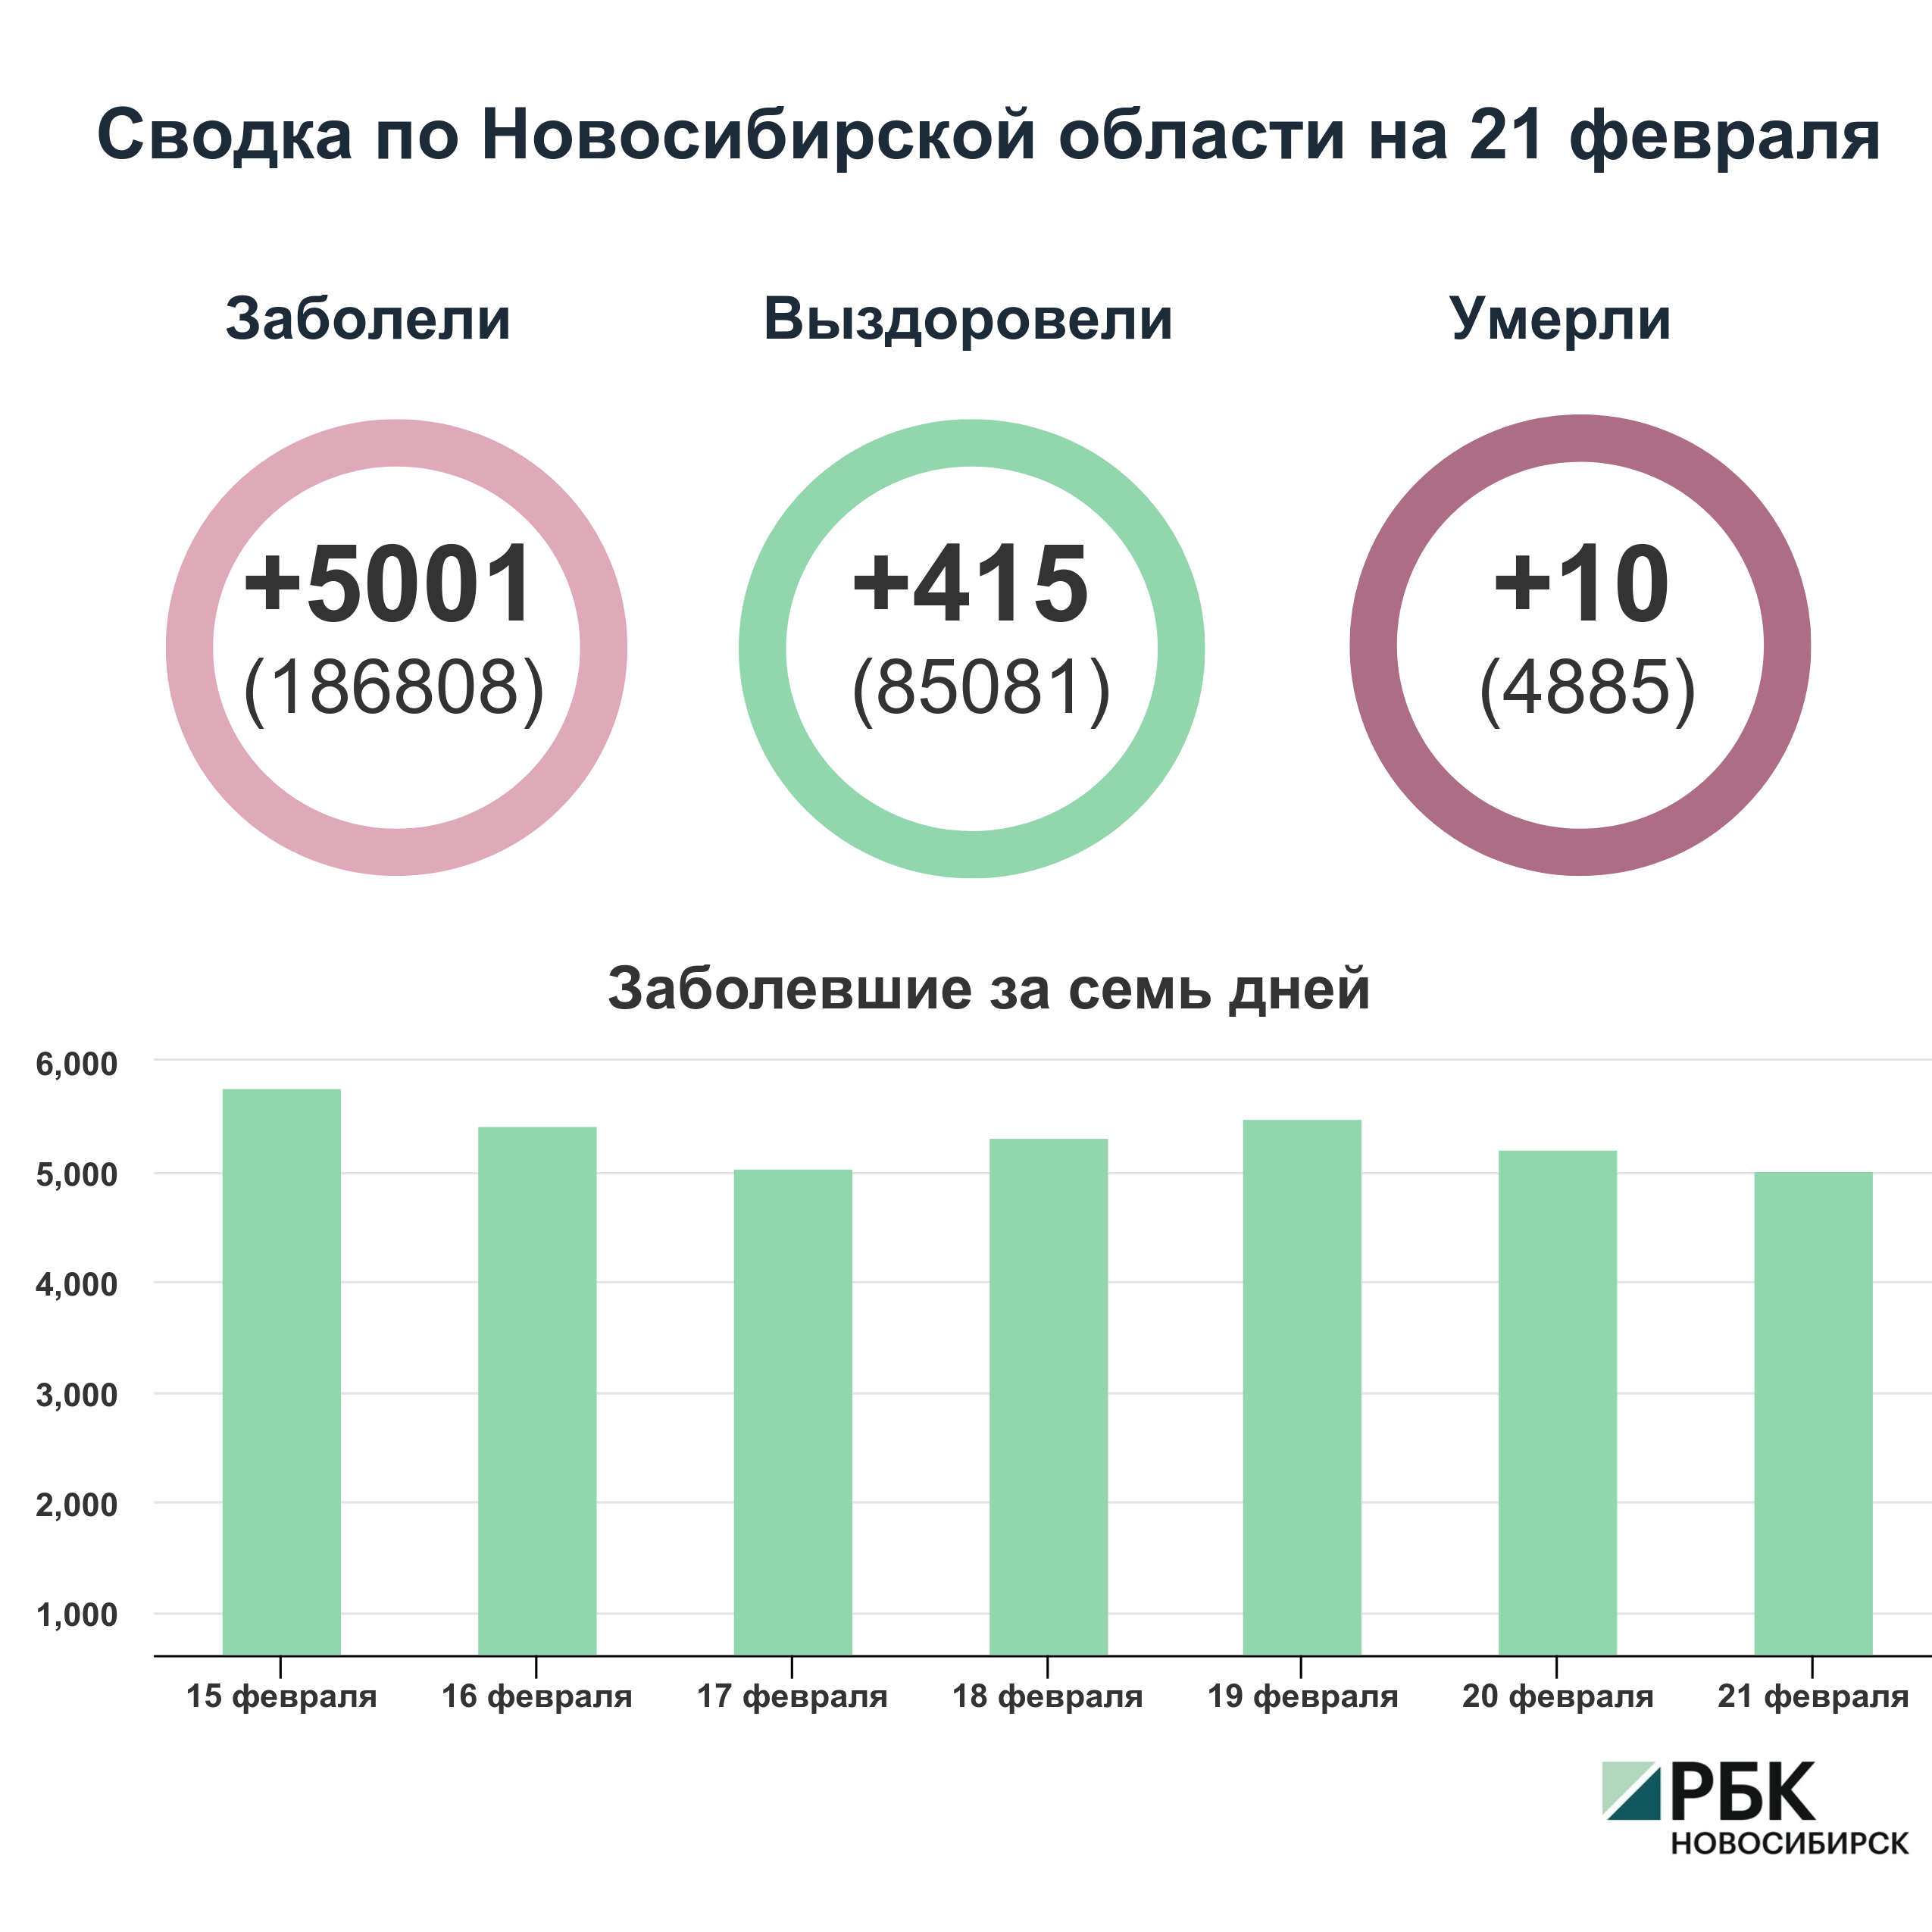 Коронавирус в Новосибирске: сводка на 21 февраля